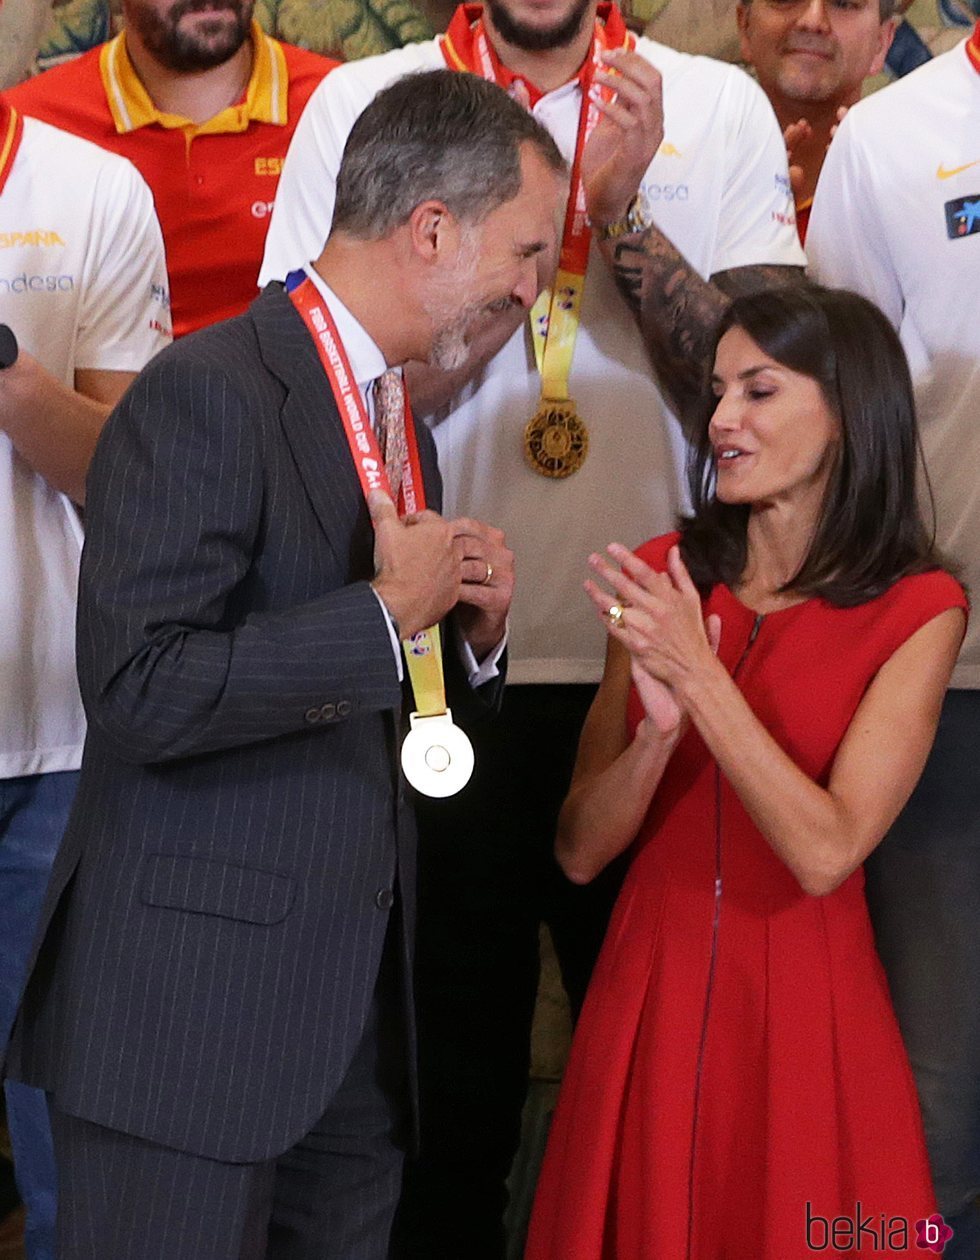 La Reina Letizia se niega a que el Rey Felipe le ponga la medalla del Mundial de Baloncesto 2019